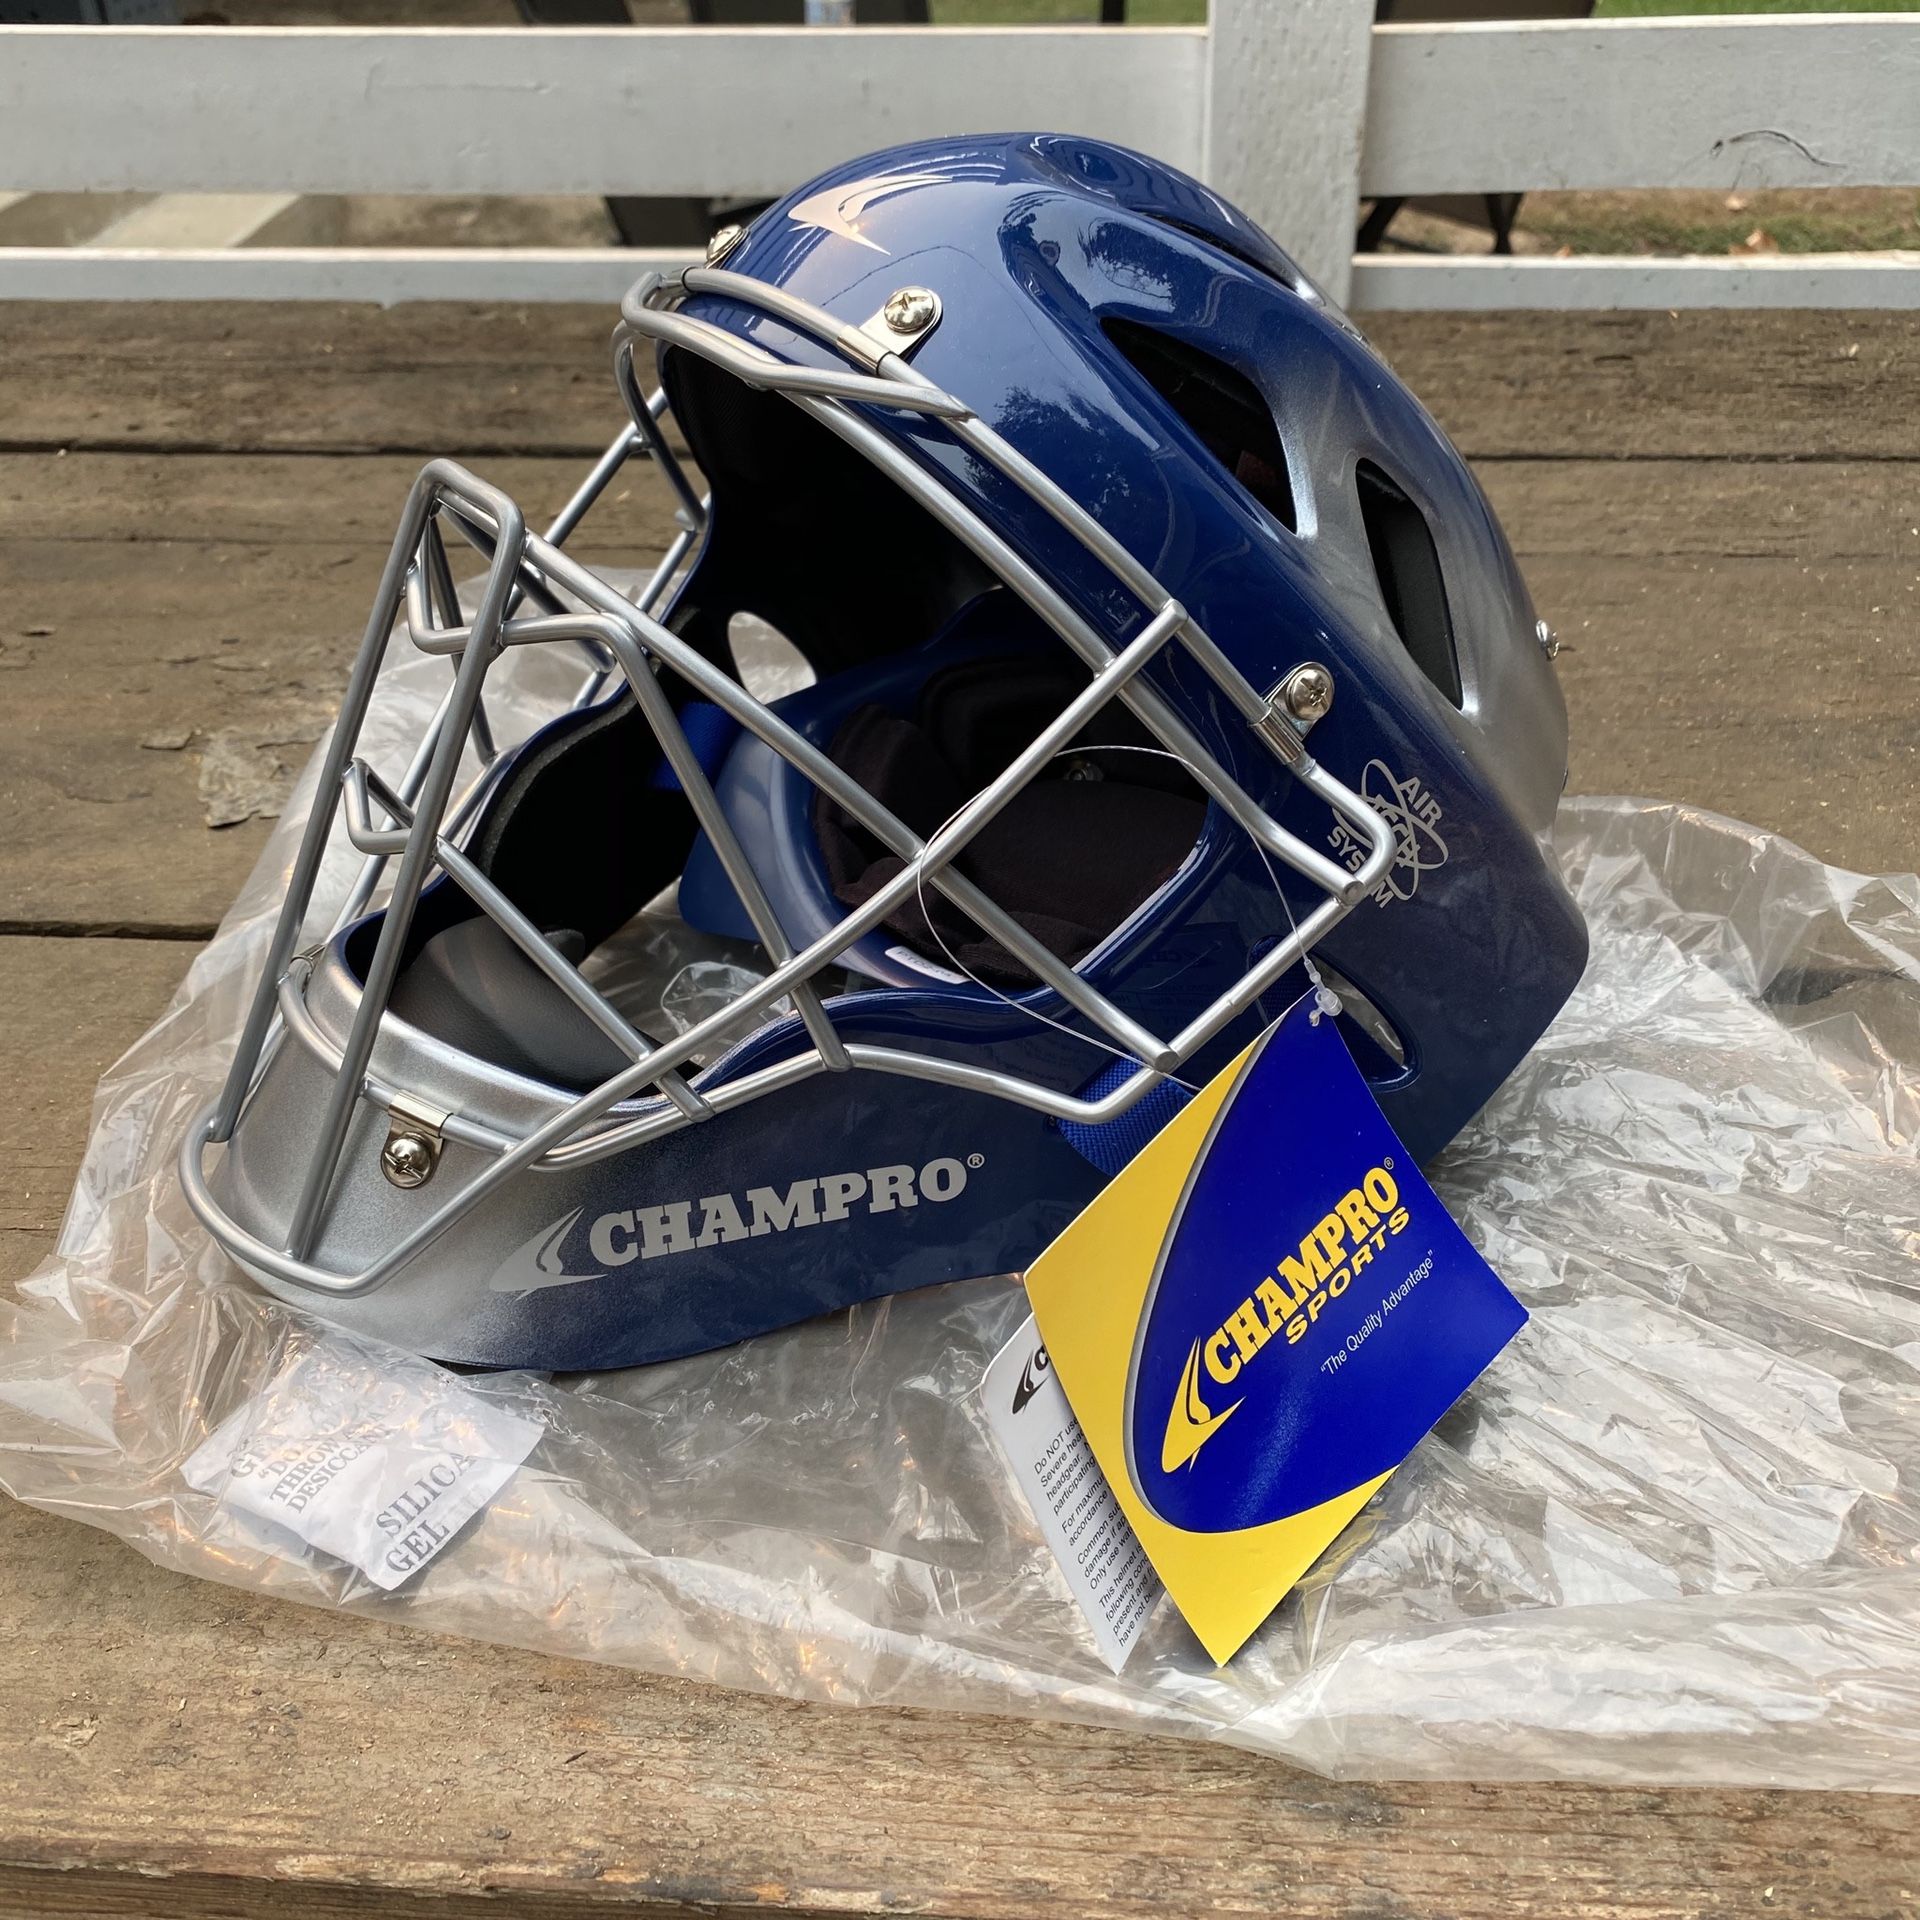 Champro men’s hockey helmet 7-7.5